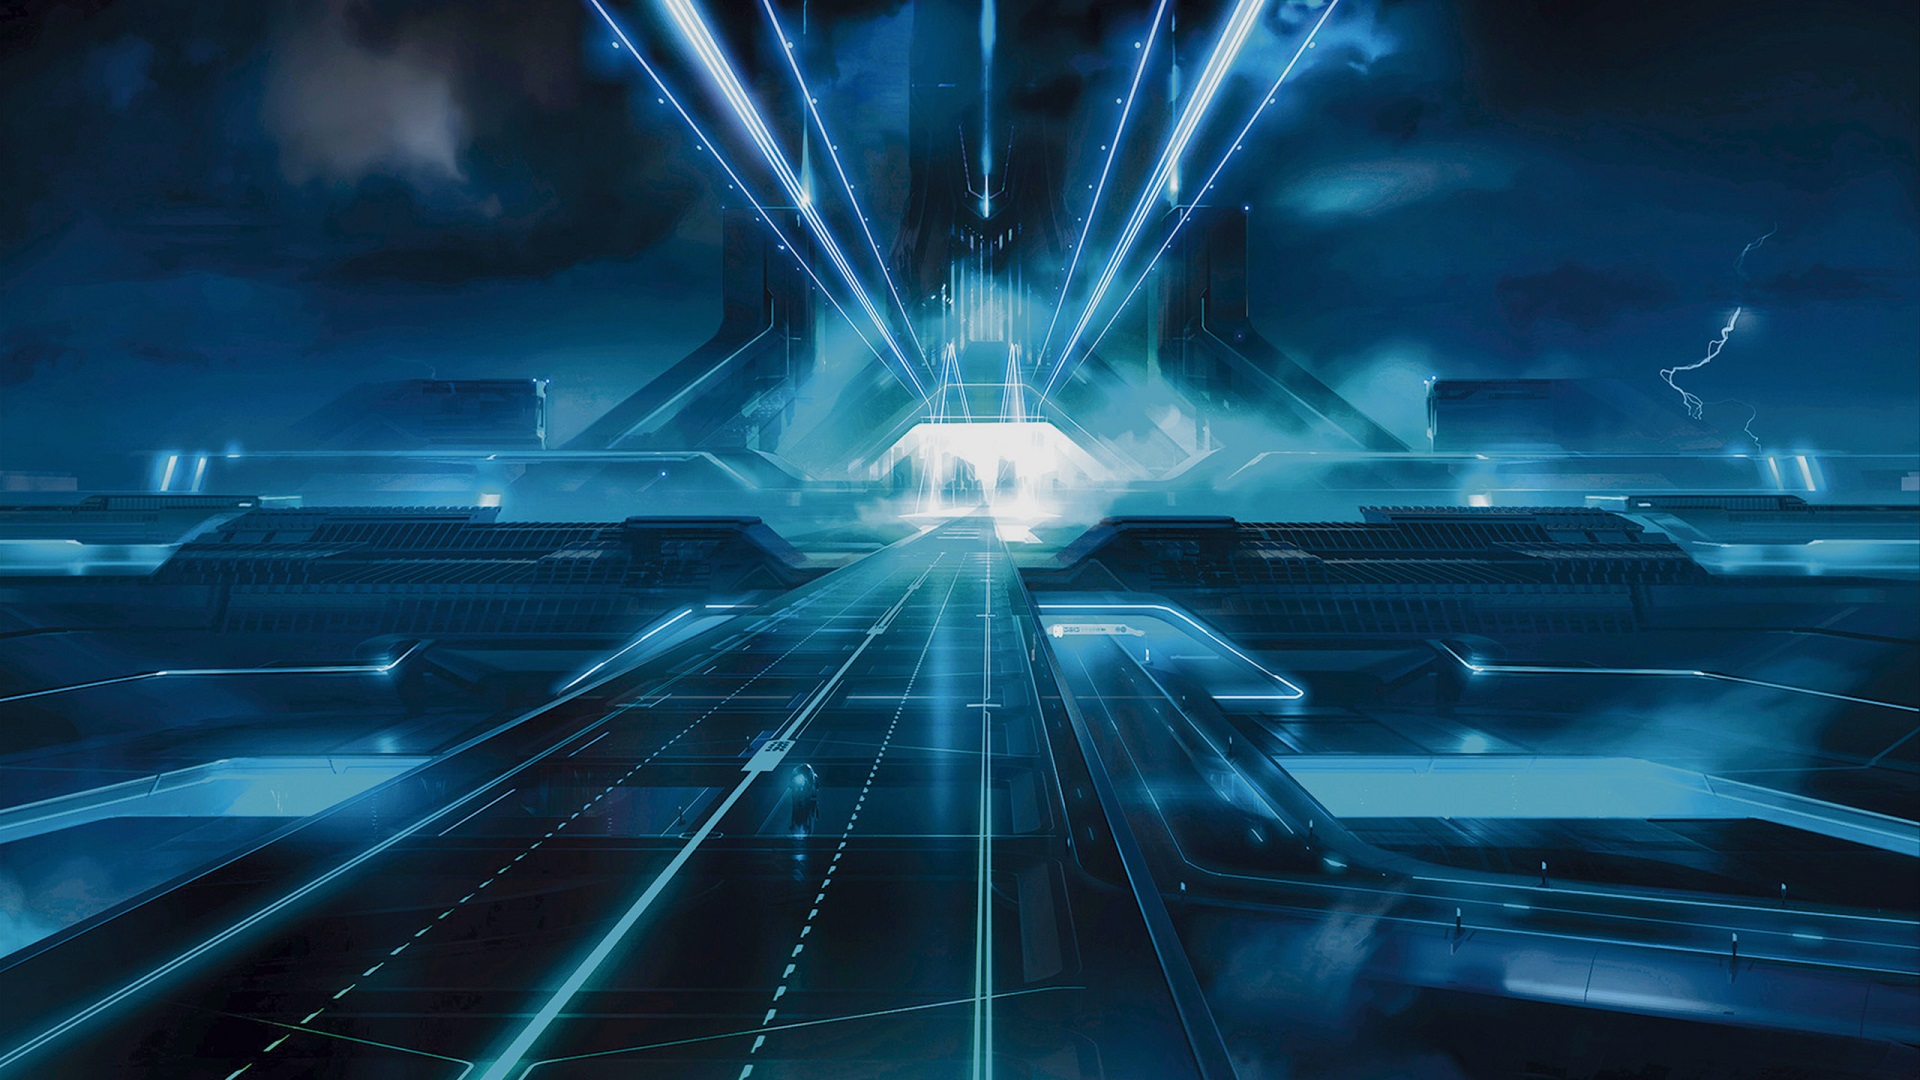 Descarga gratuita de fondo de pantalla para móvil de Tron: El Legado, Tron, Películas.